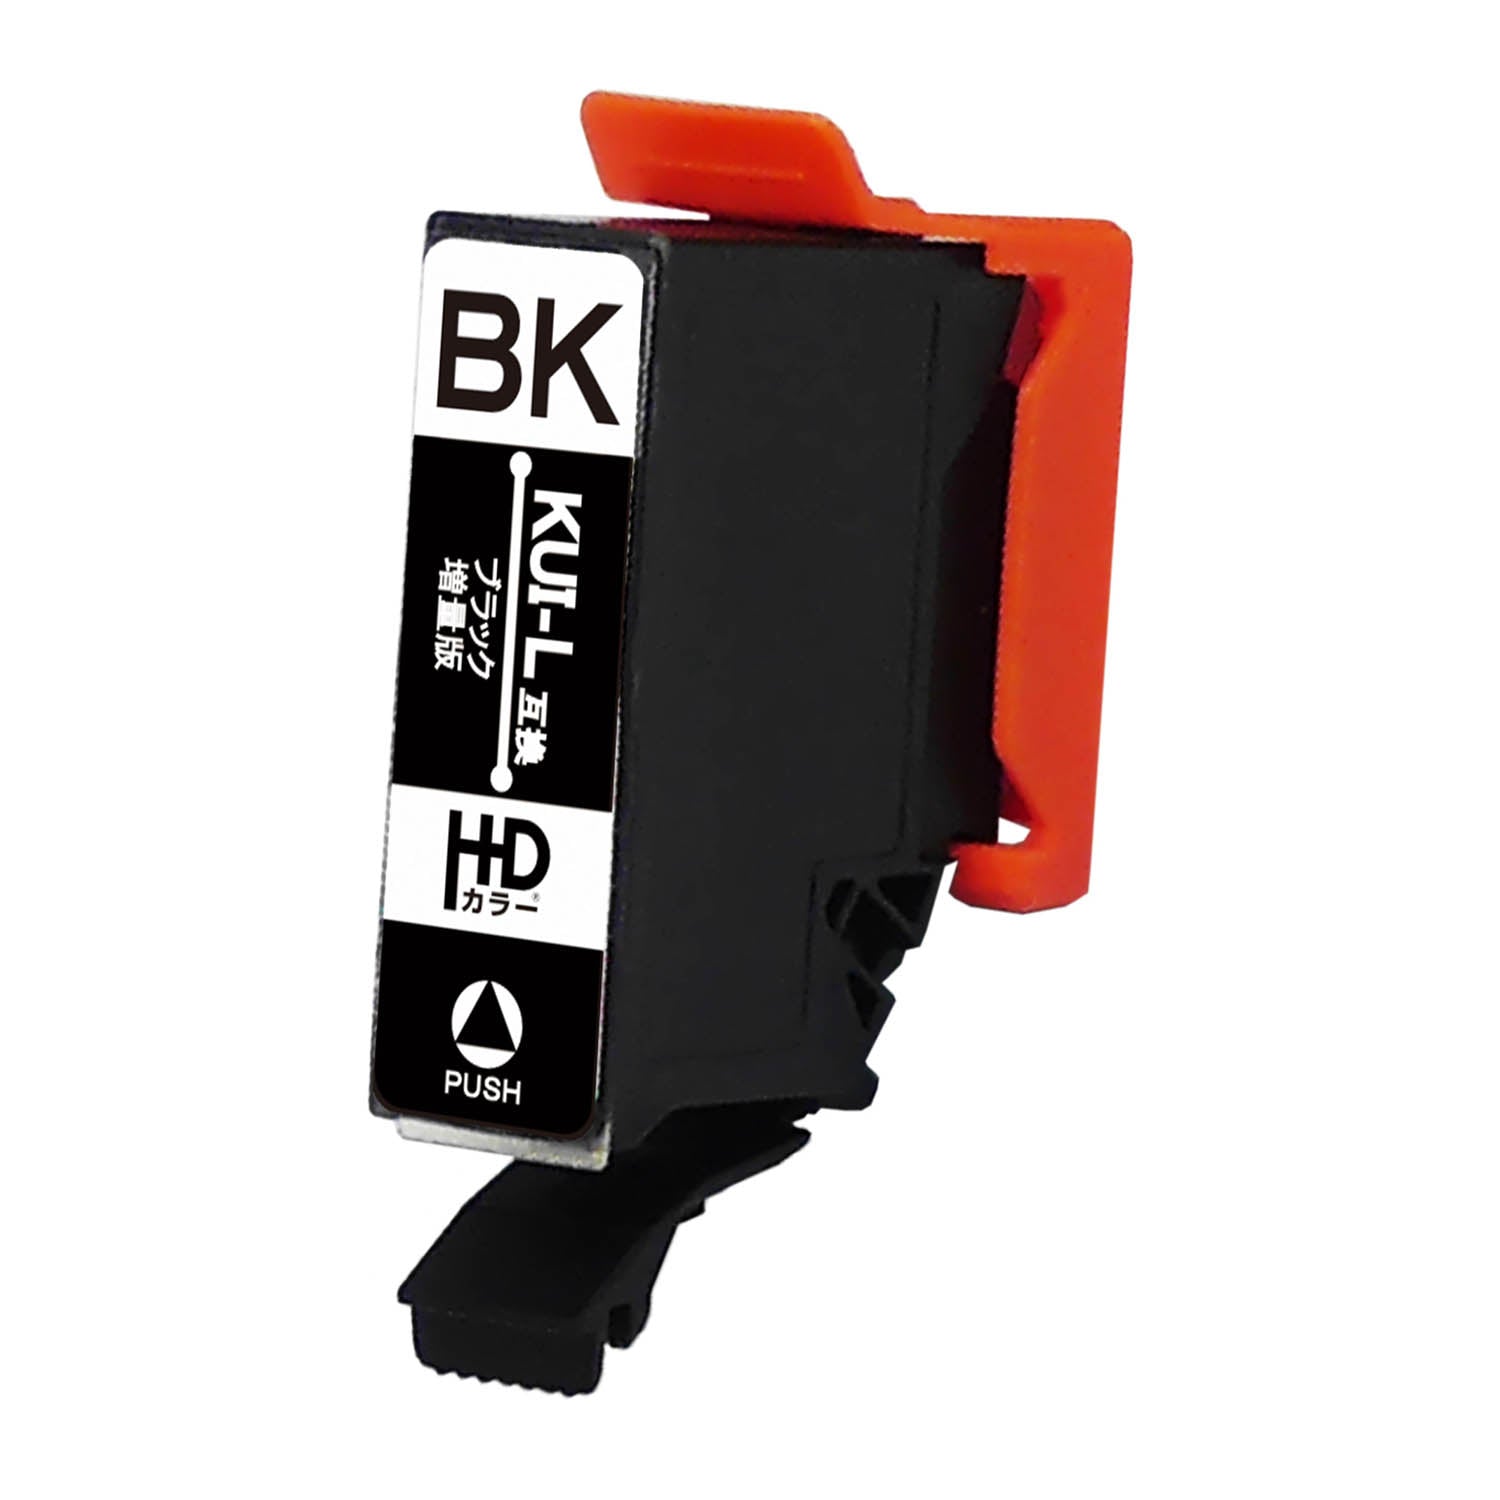 エプソン用 KUI-BK-L (クマノミ) 互換インク ブラック 増量版